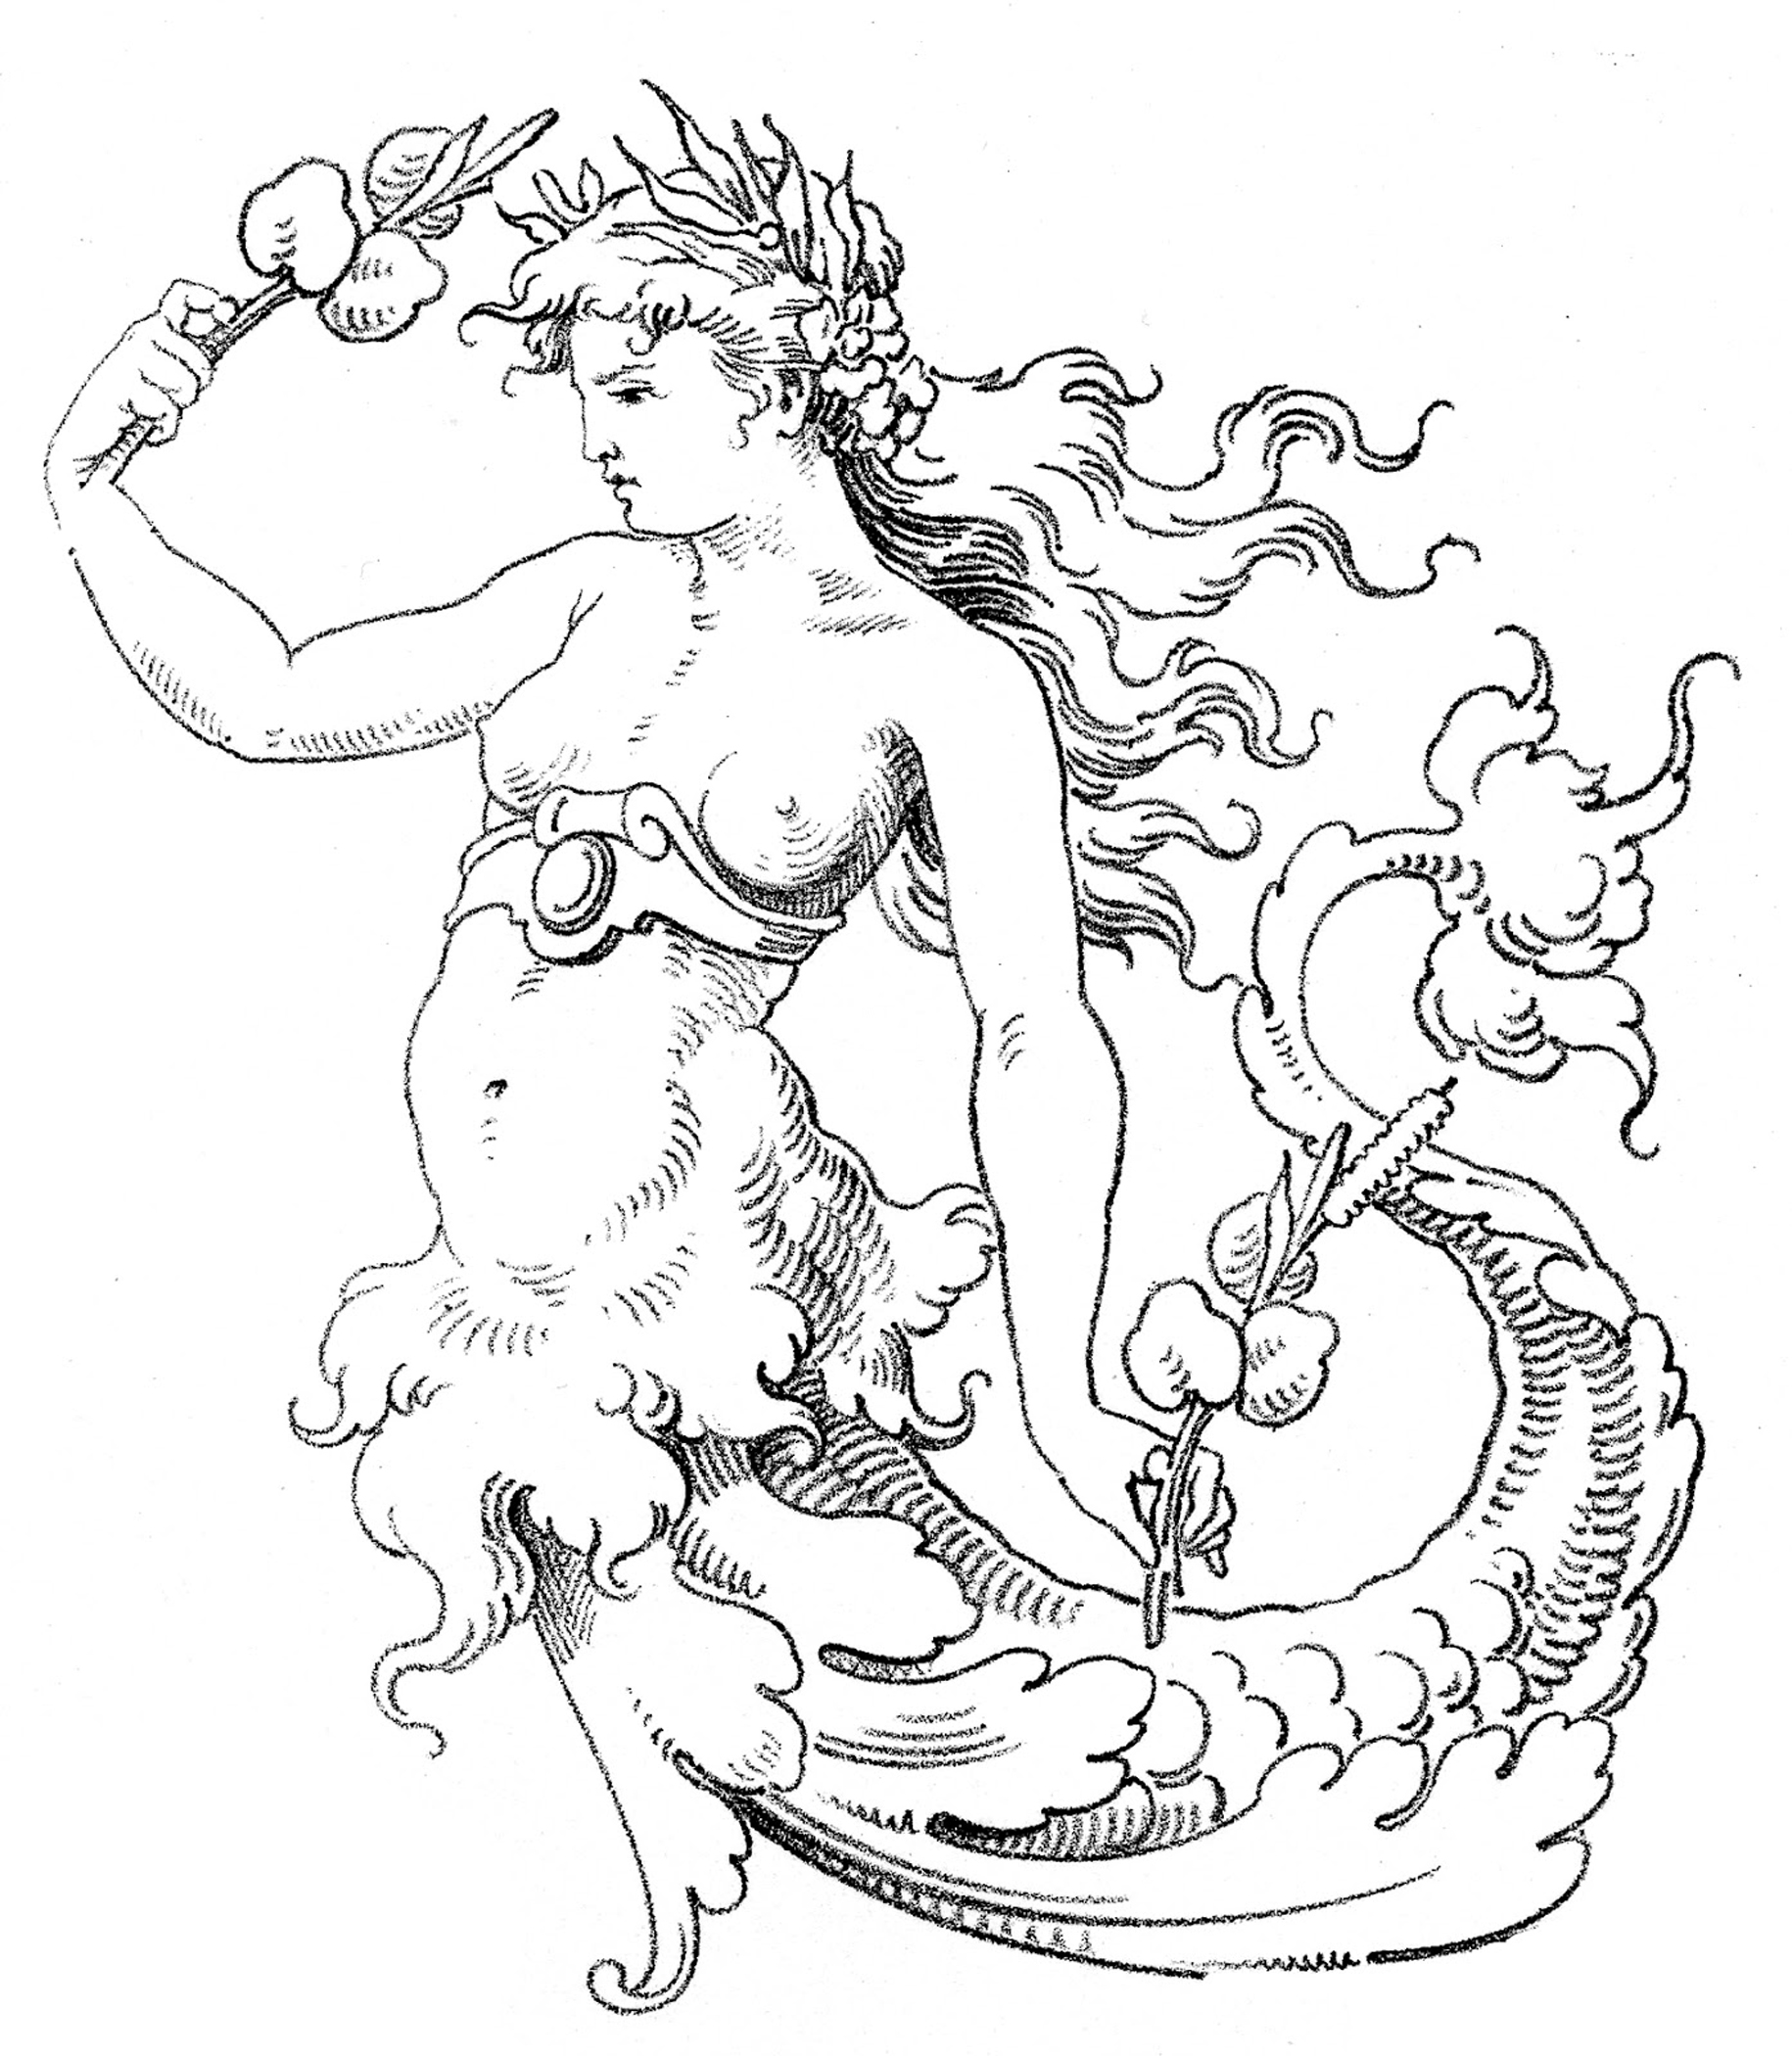 vintage mermaid background